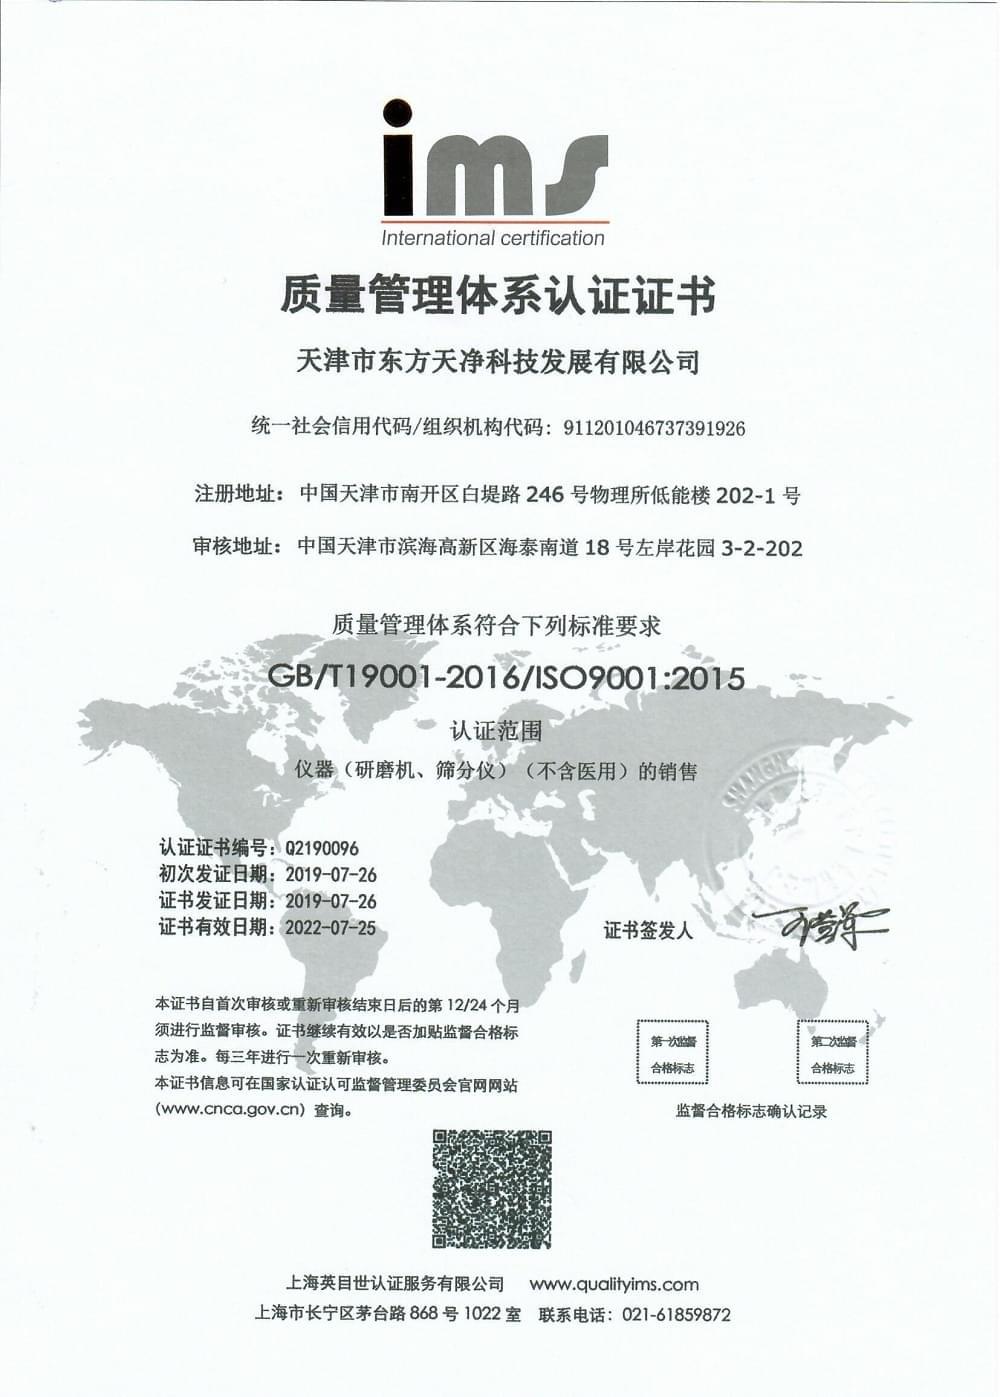 東方天凈產品ISO 9001質量管理體系認證